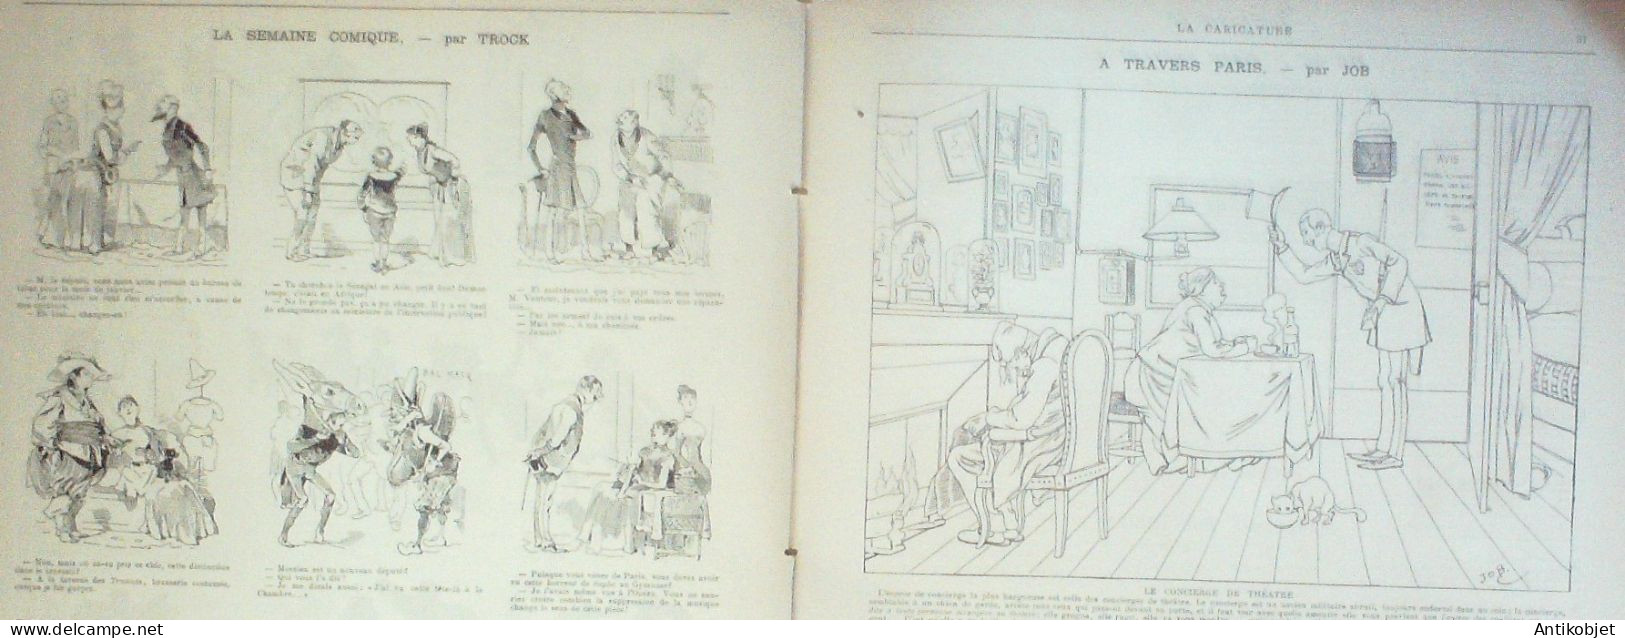 La Caricature 1886 N°317 Engagés Conditionnels Caran D'Ache Cabaret Puist-sans-vin Moron Trock Lorme Sorel - Tijdschriften - Voor 1900